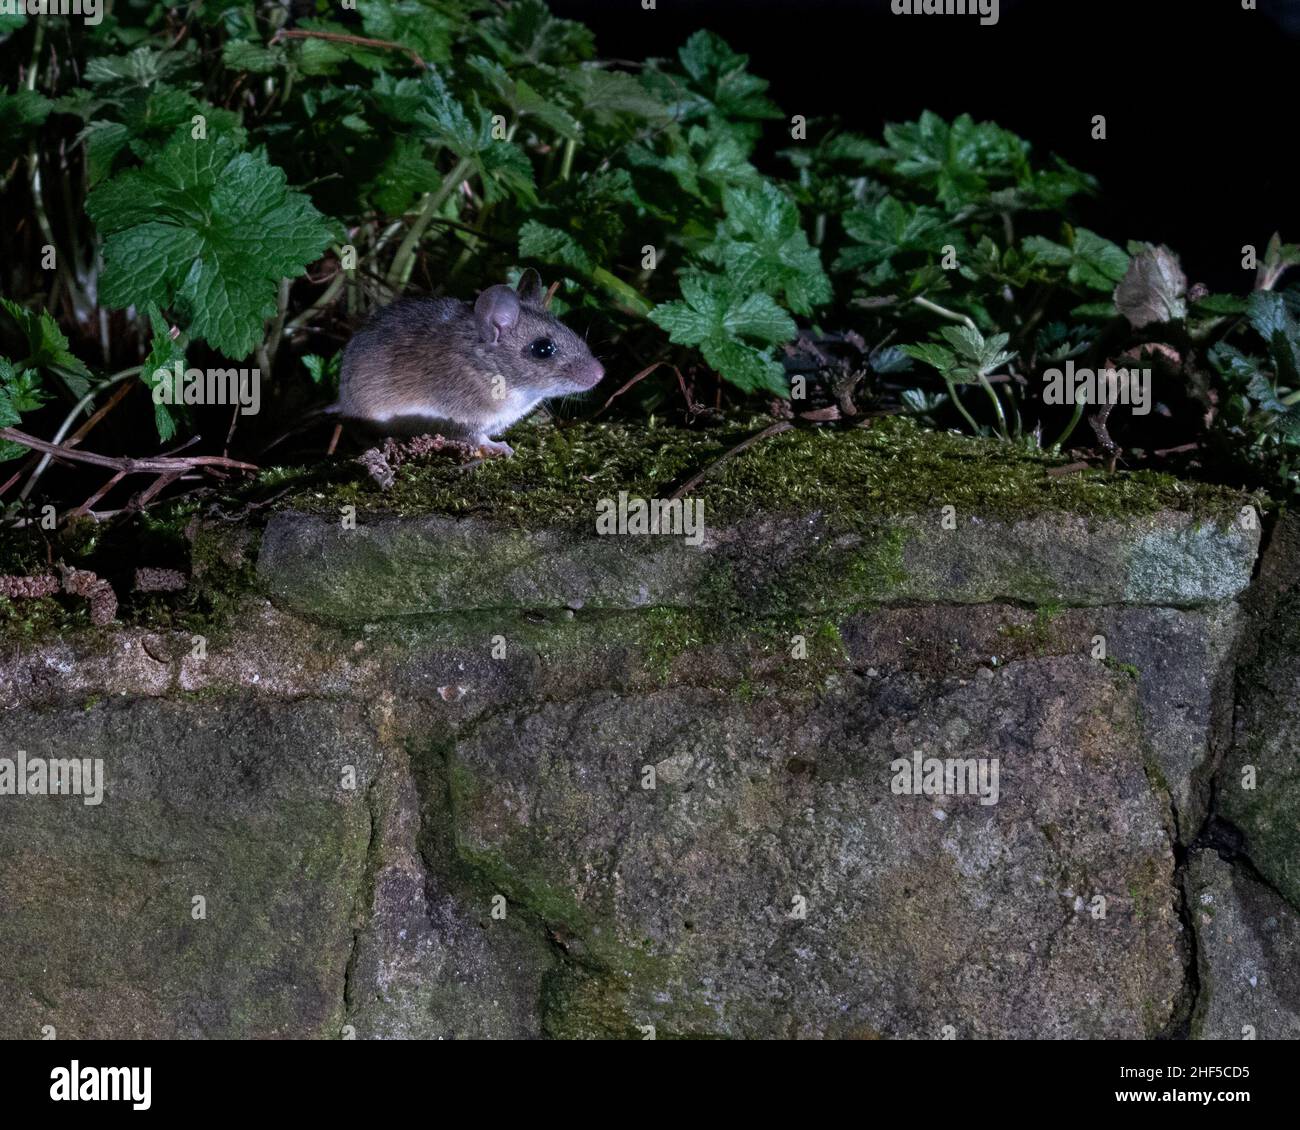 Badger, zorro, ratón de madera que se alimenta en el jardín capturado con la tecnología de cámara réflex Foto de stock